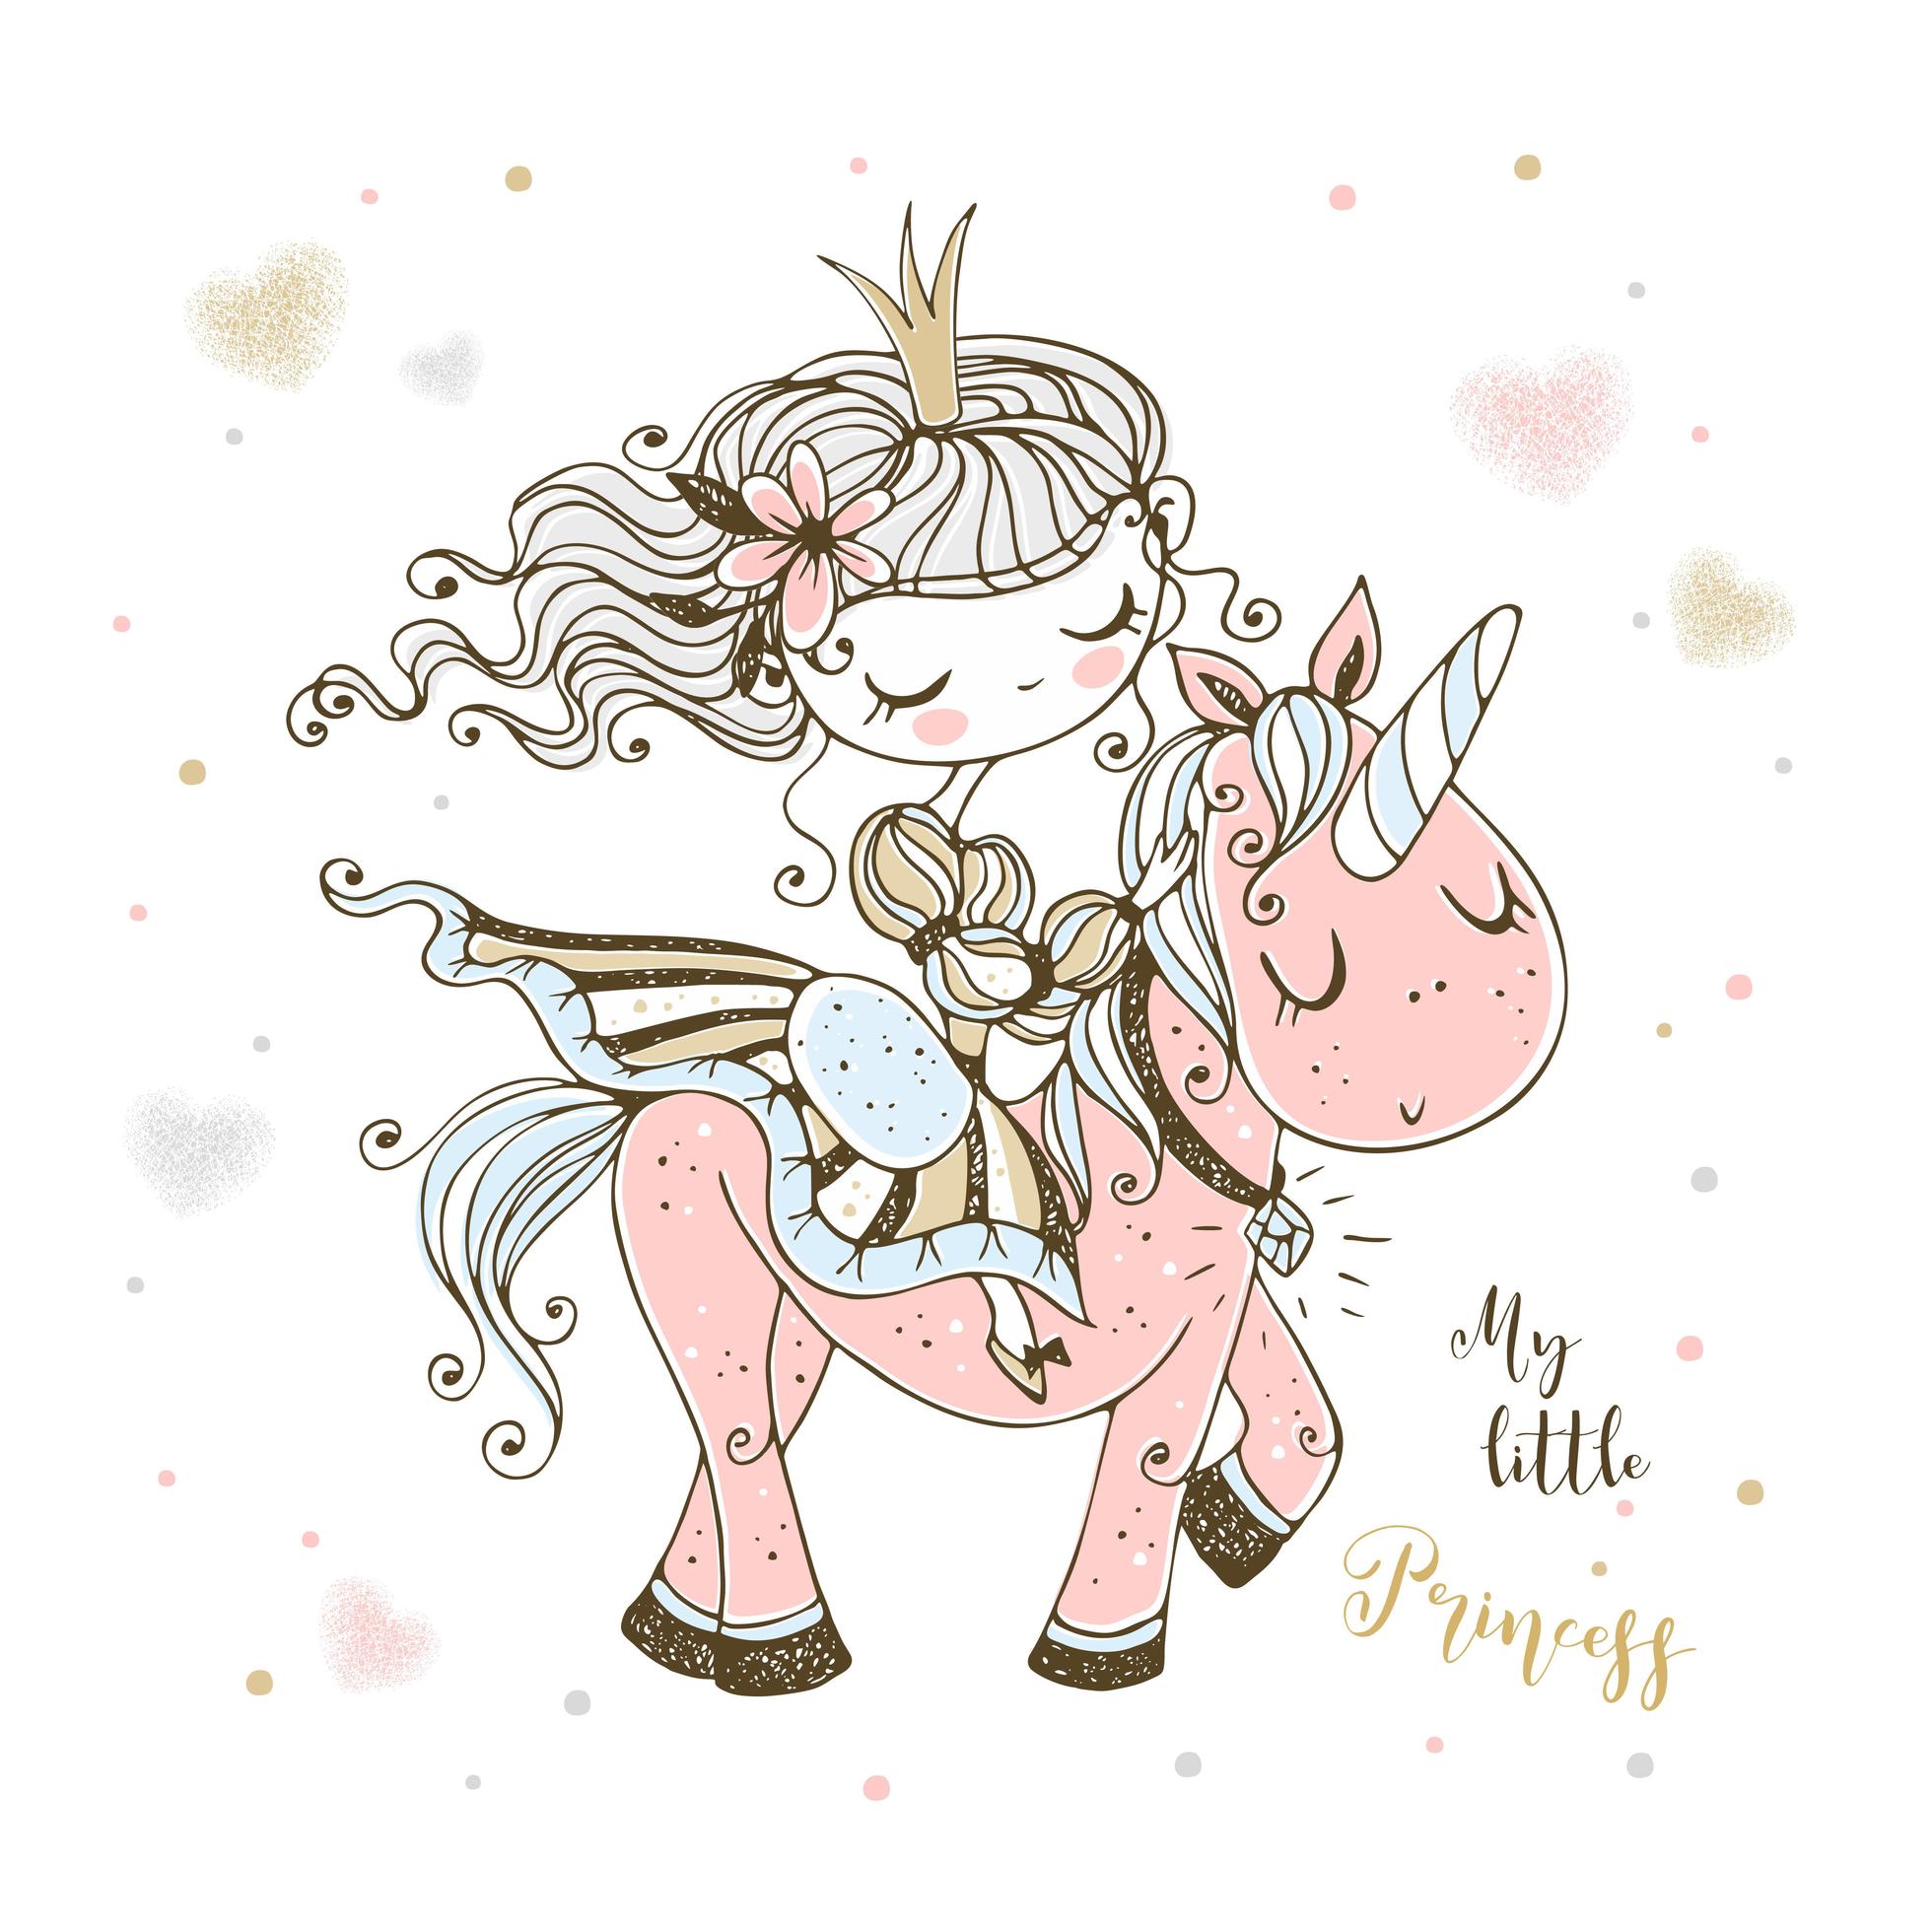 A fabulous cute Princess rides a pink unicorn. 